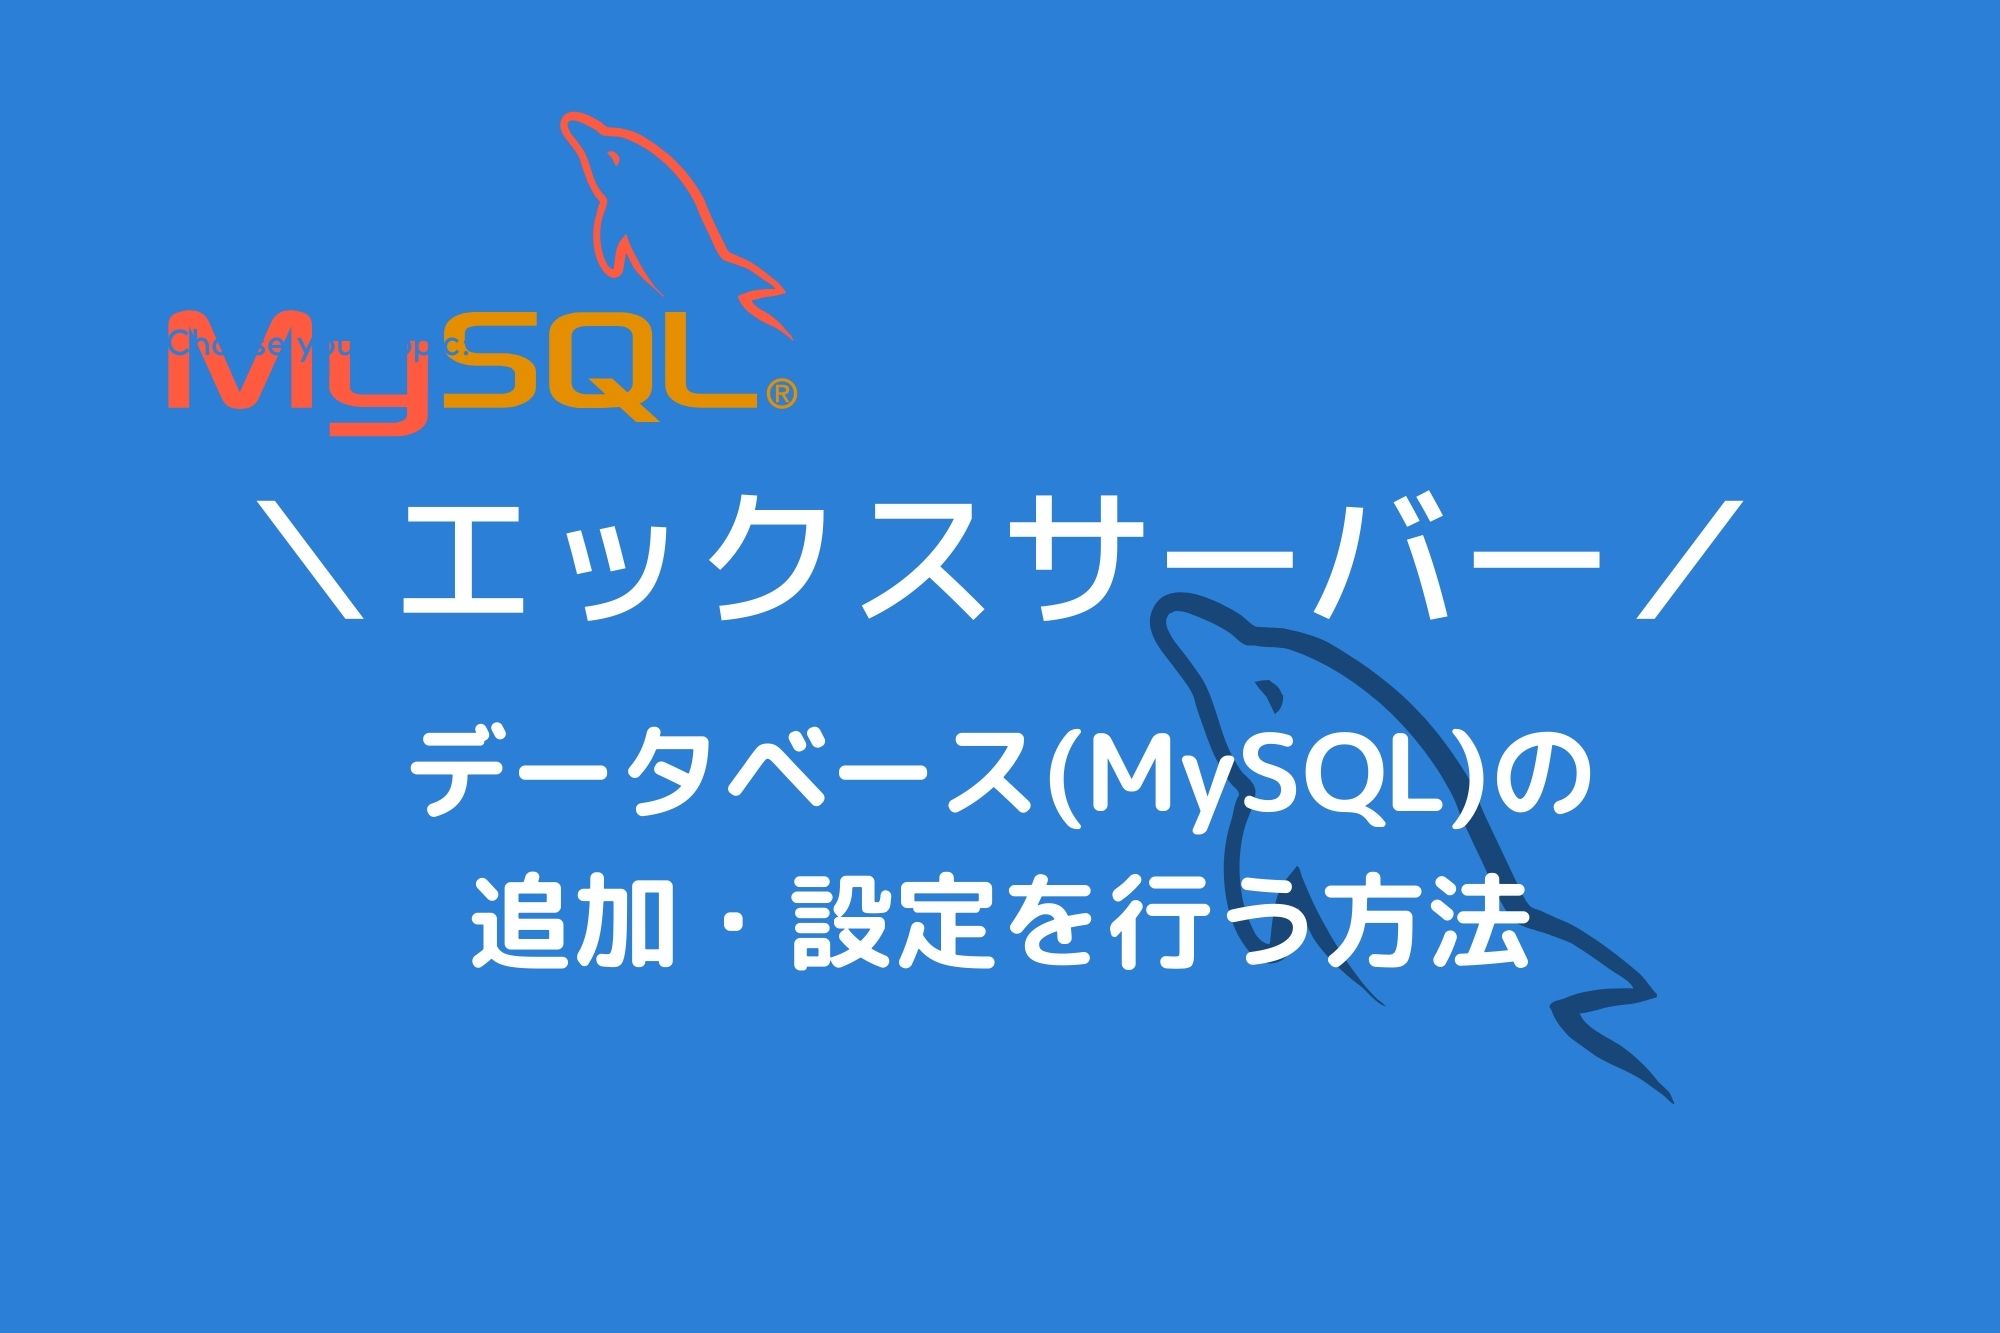 エックスサーバーでデータベース(MySQL)を手動で追加する方法